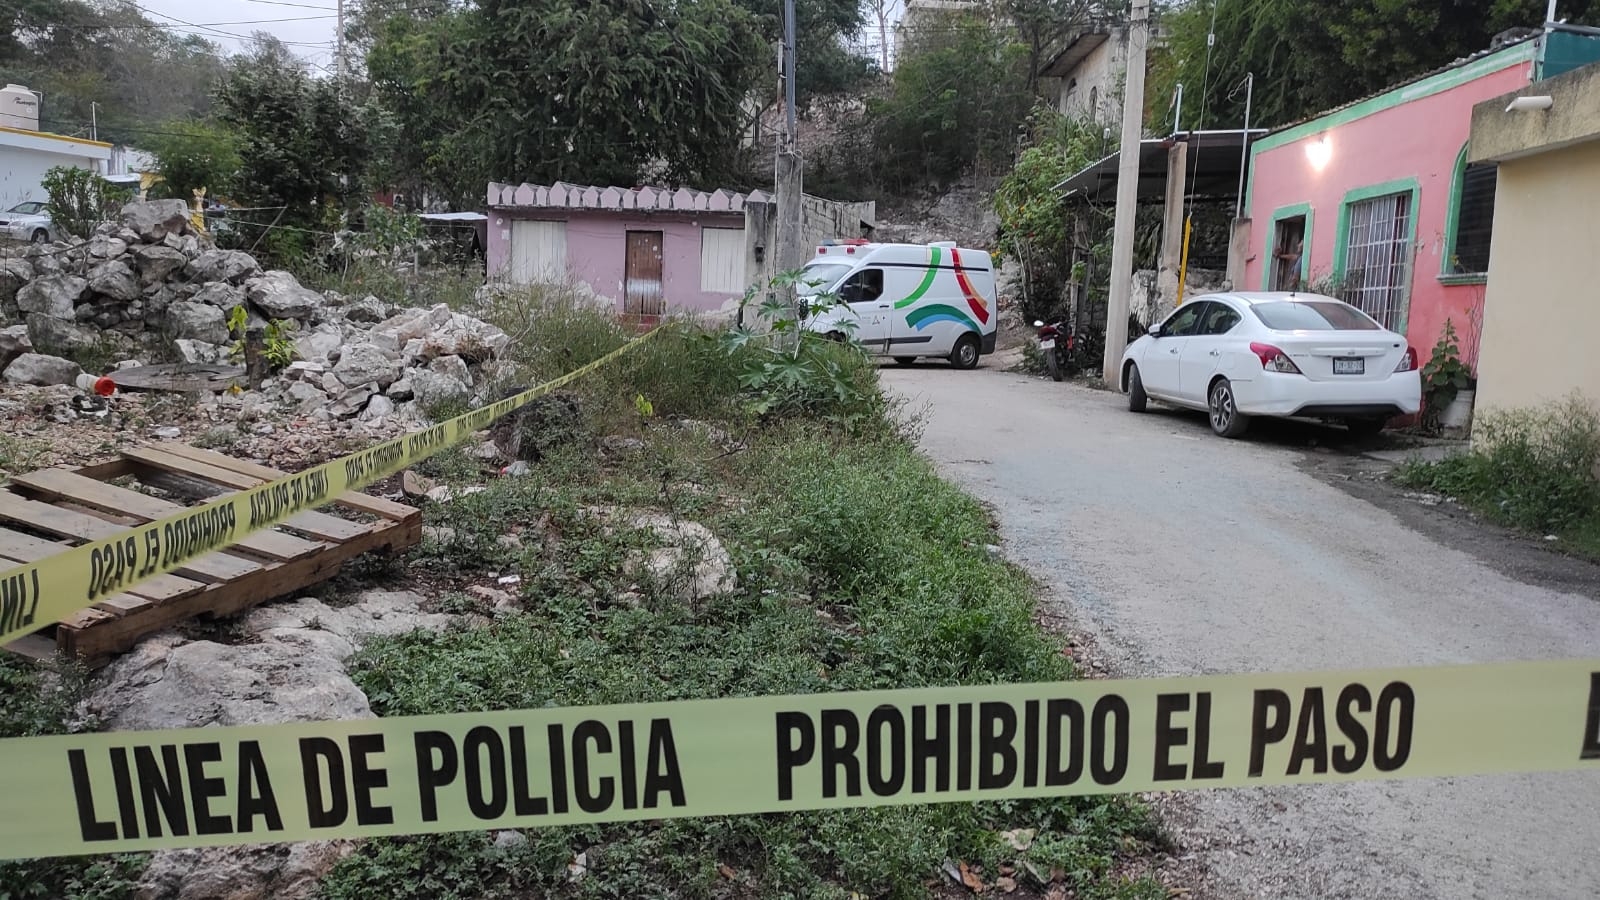 Suicidios en Campeche, problema de salud pública; van 25 casos en tres meses